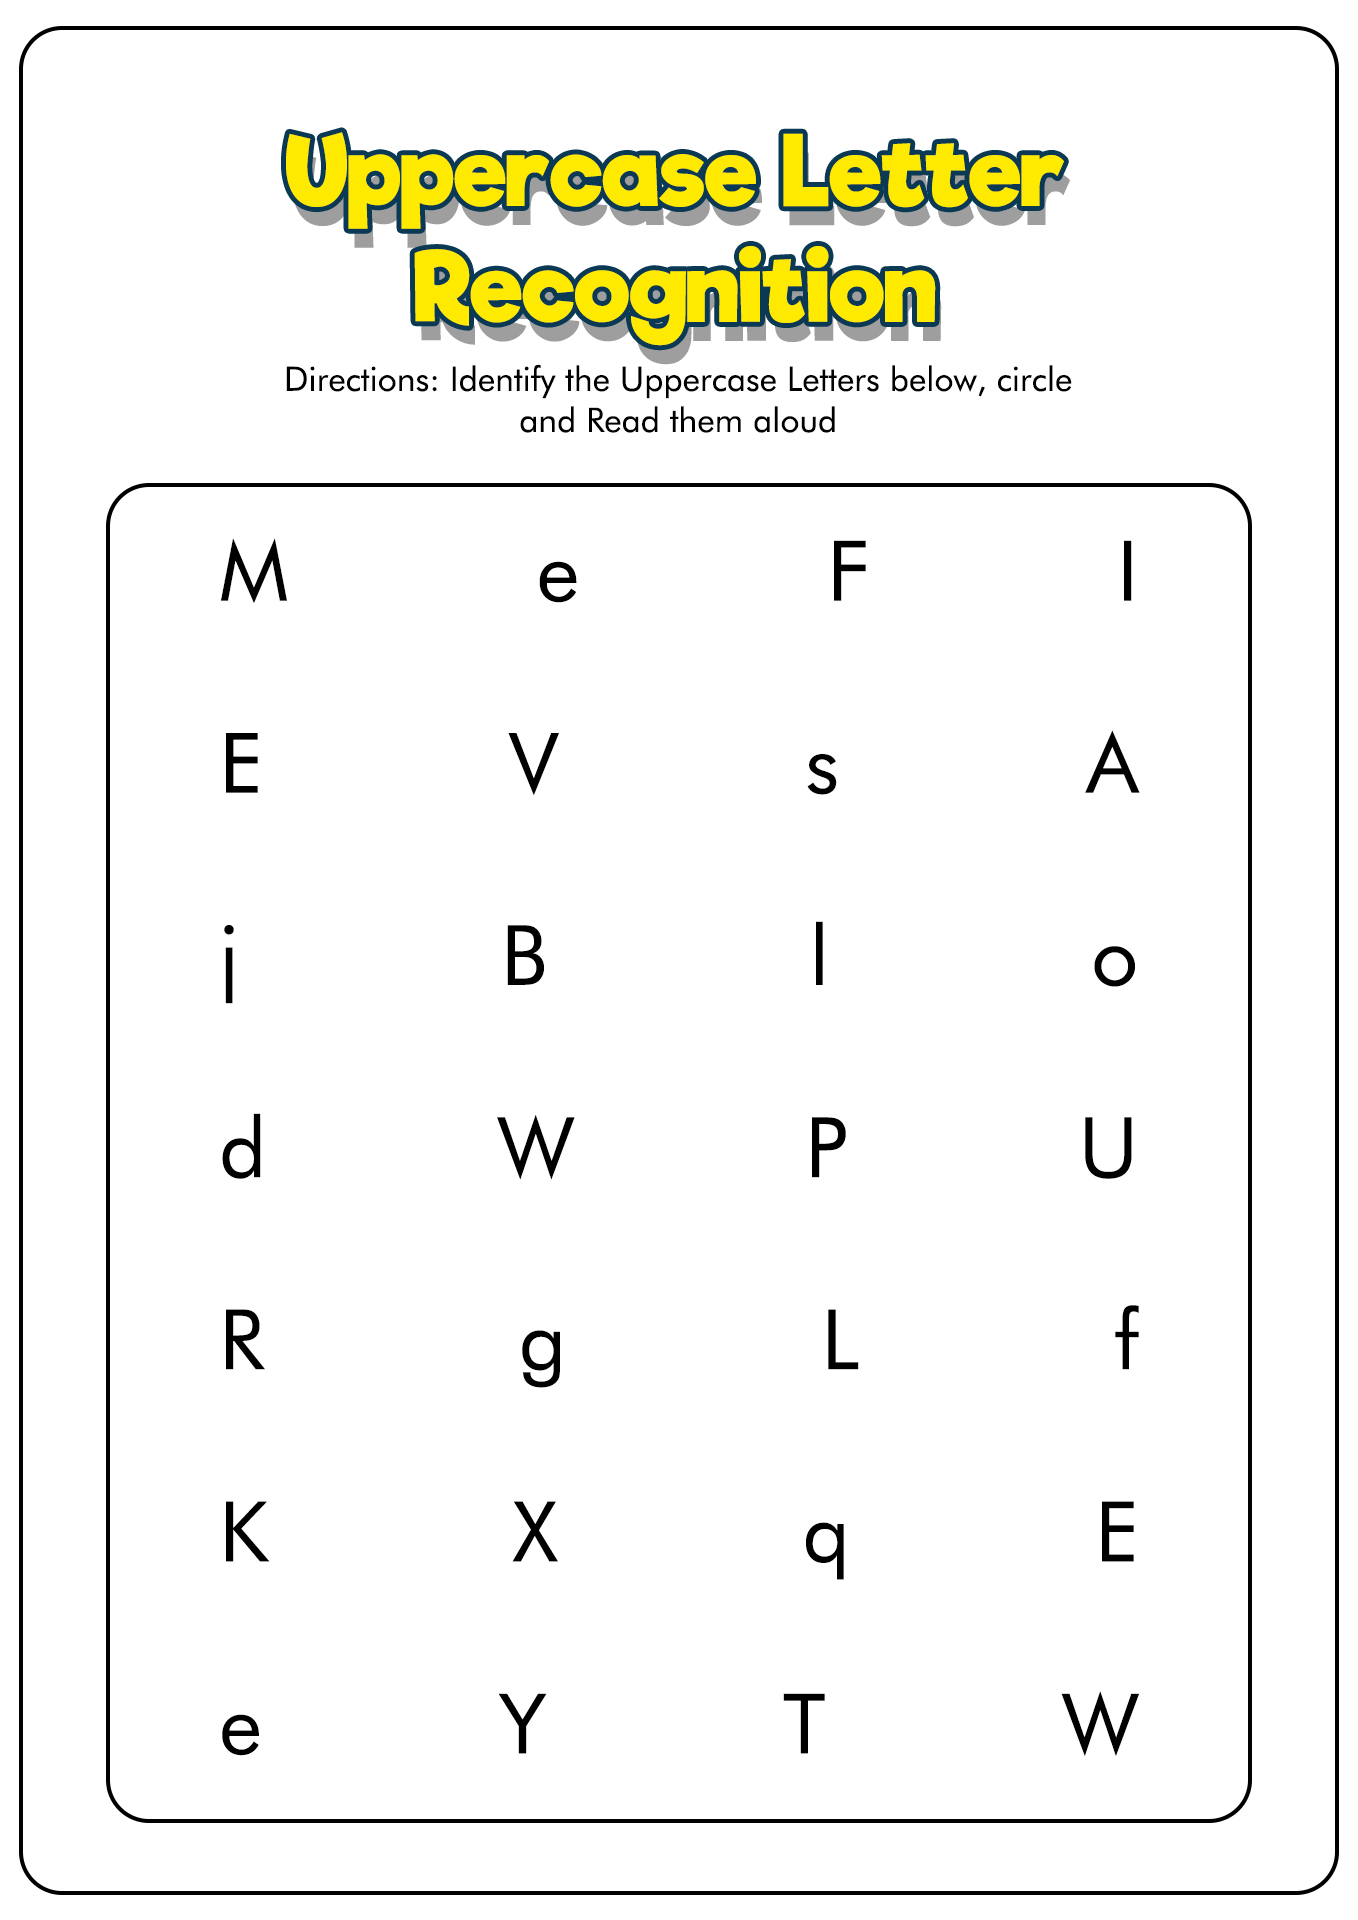 Letter Identification Worksheets Image